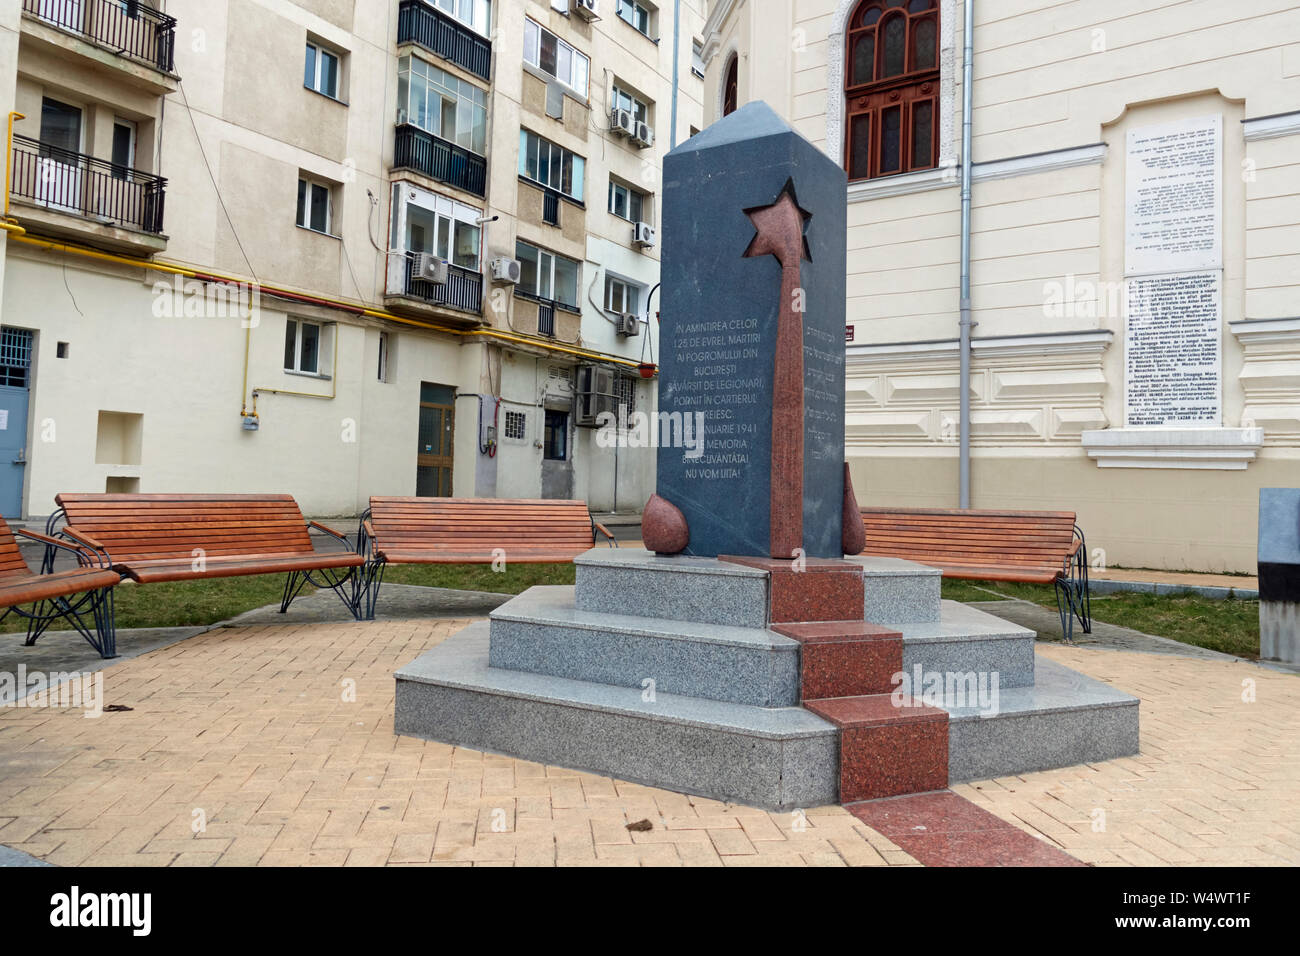 Denkmal für die 125 Juden (Legionärskrankheit) zwischen 21. bis 23. Januar 1941 von der rumänischen Eisernen Garde ermordet. Jüdische Viertel, Bukarest, Rumänien. Stockfoto